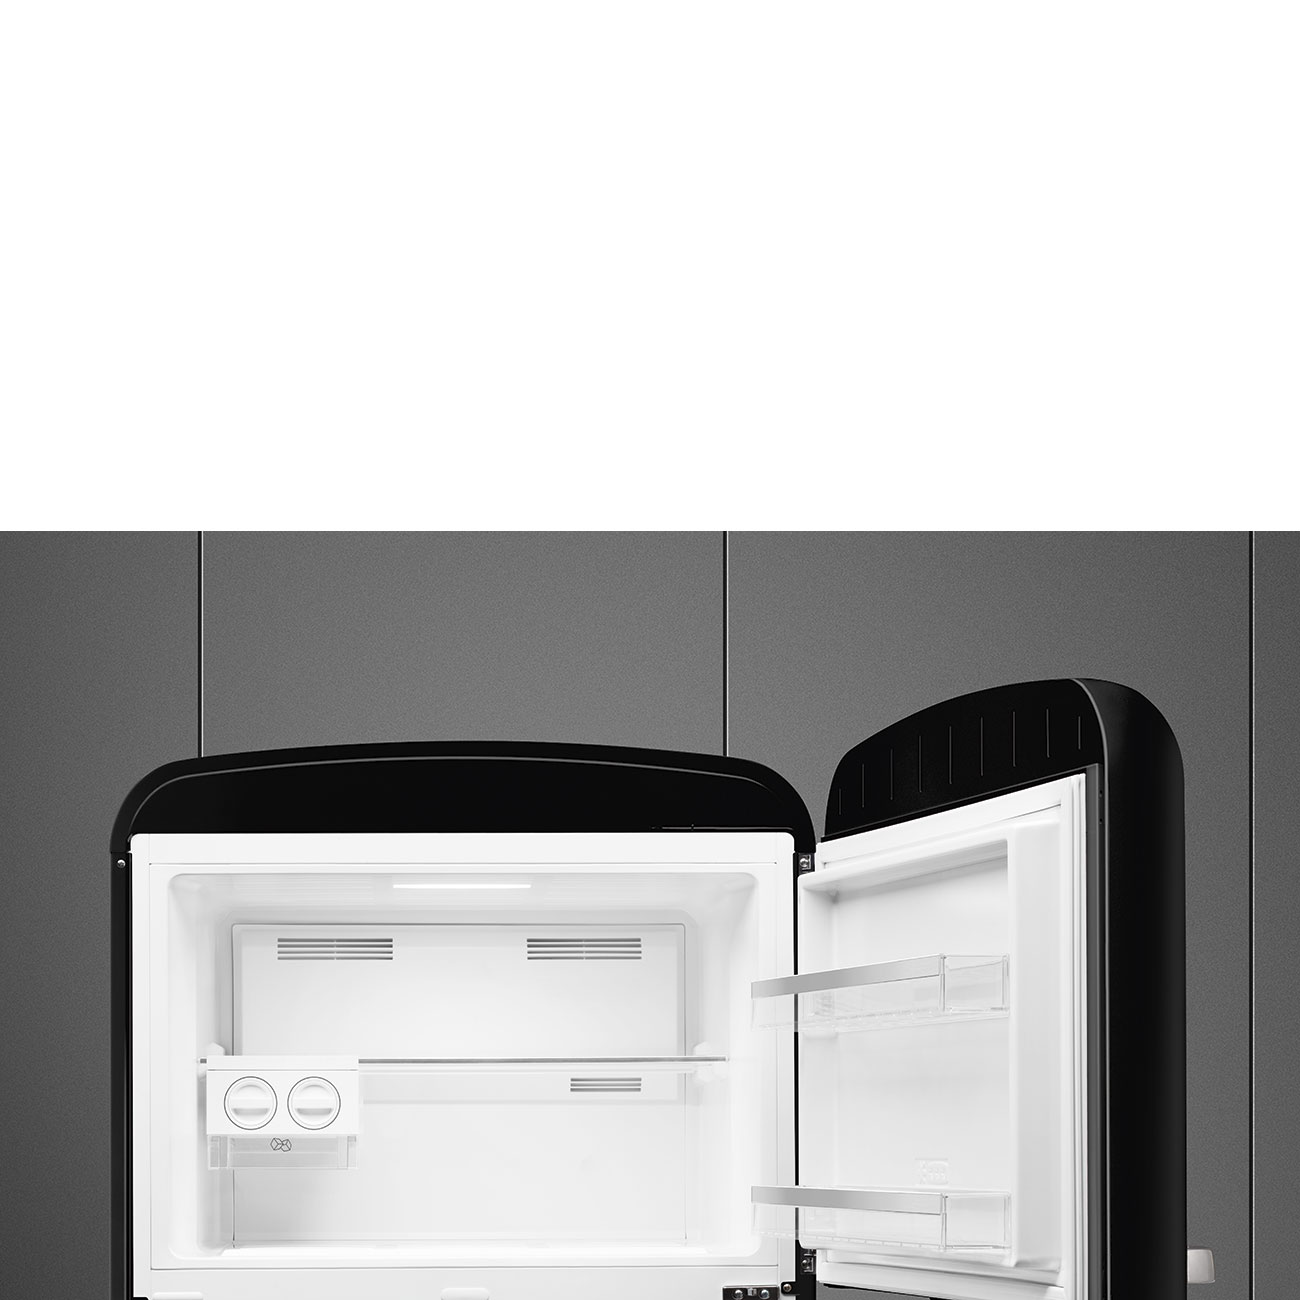 Black refrigerator - Smeg_4